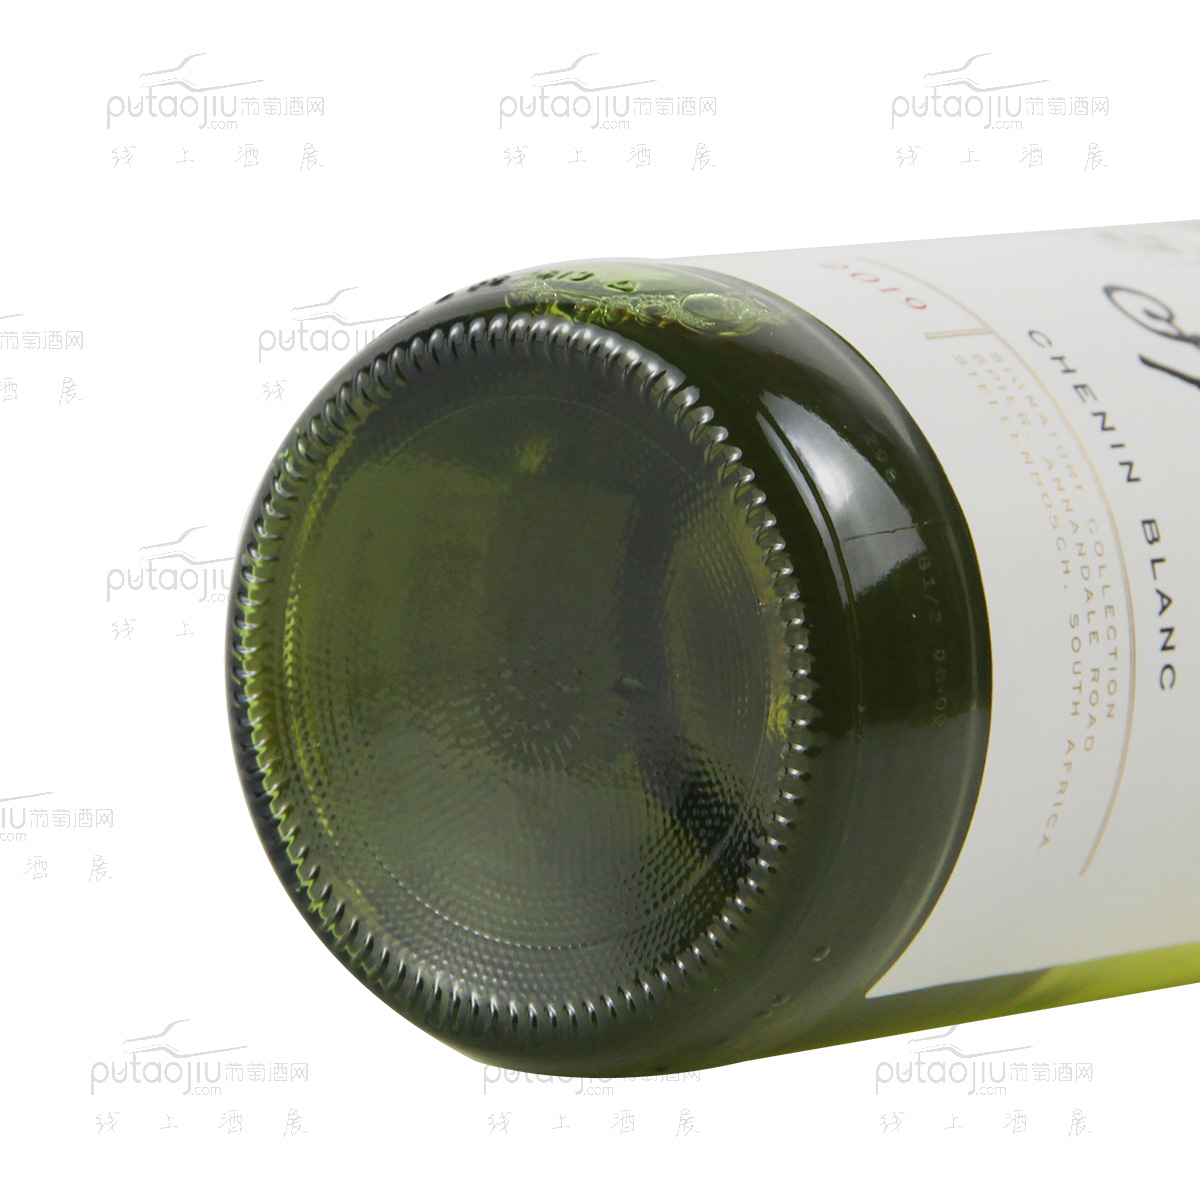 南非斯泰伦博斯斯皮尔酒庄名鉴系列白诗南干白葡萄酒